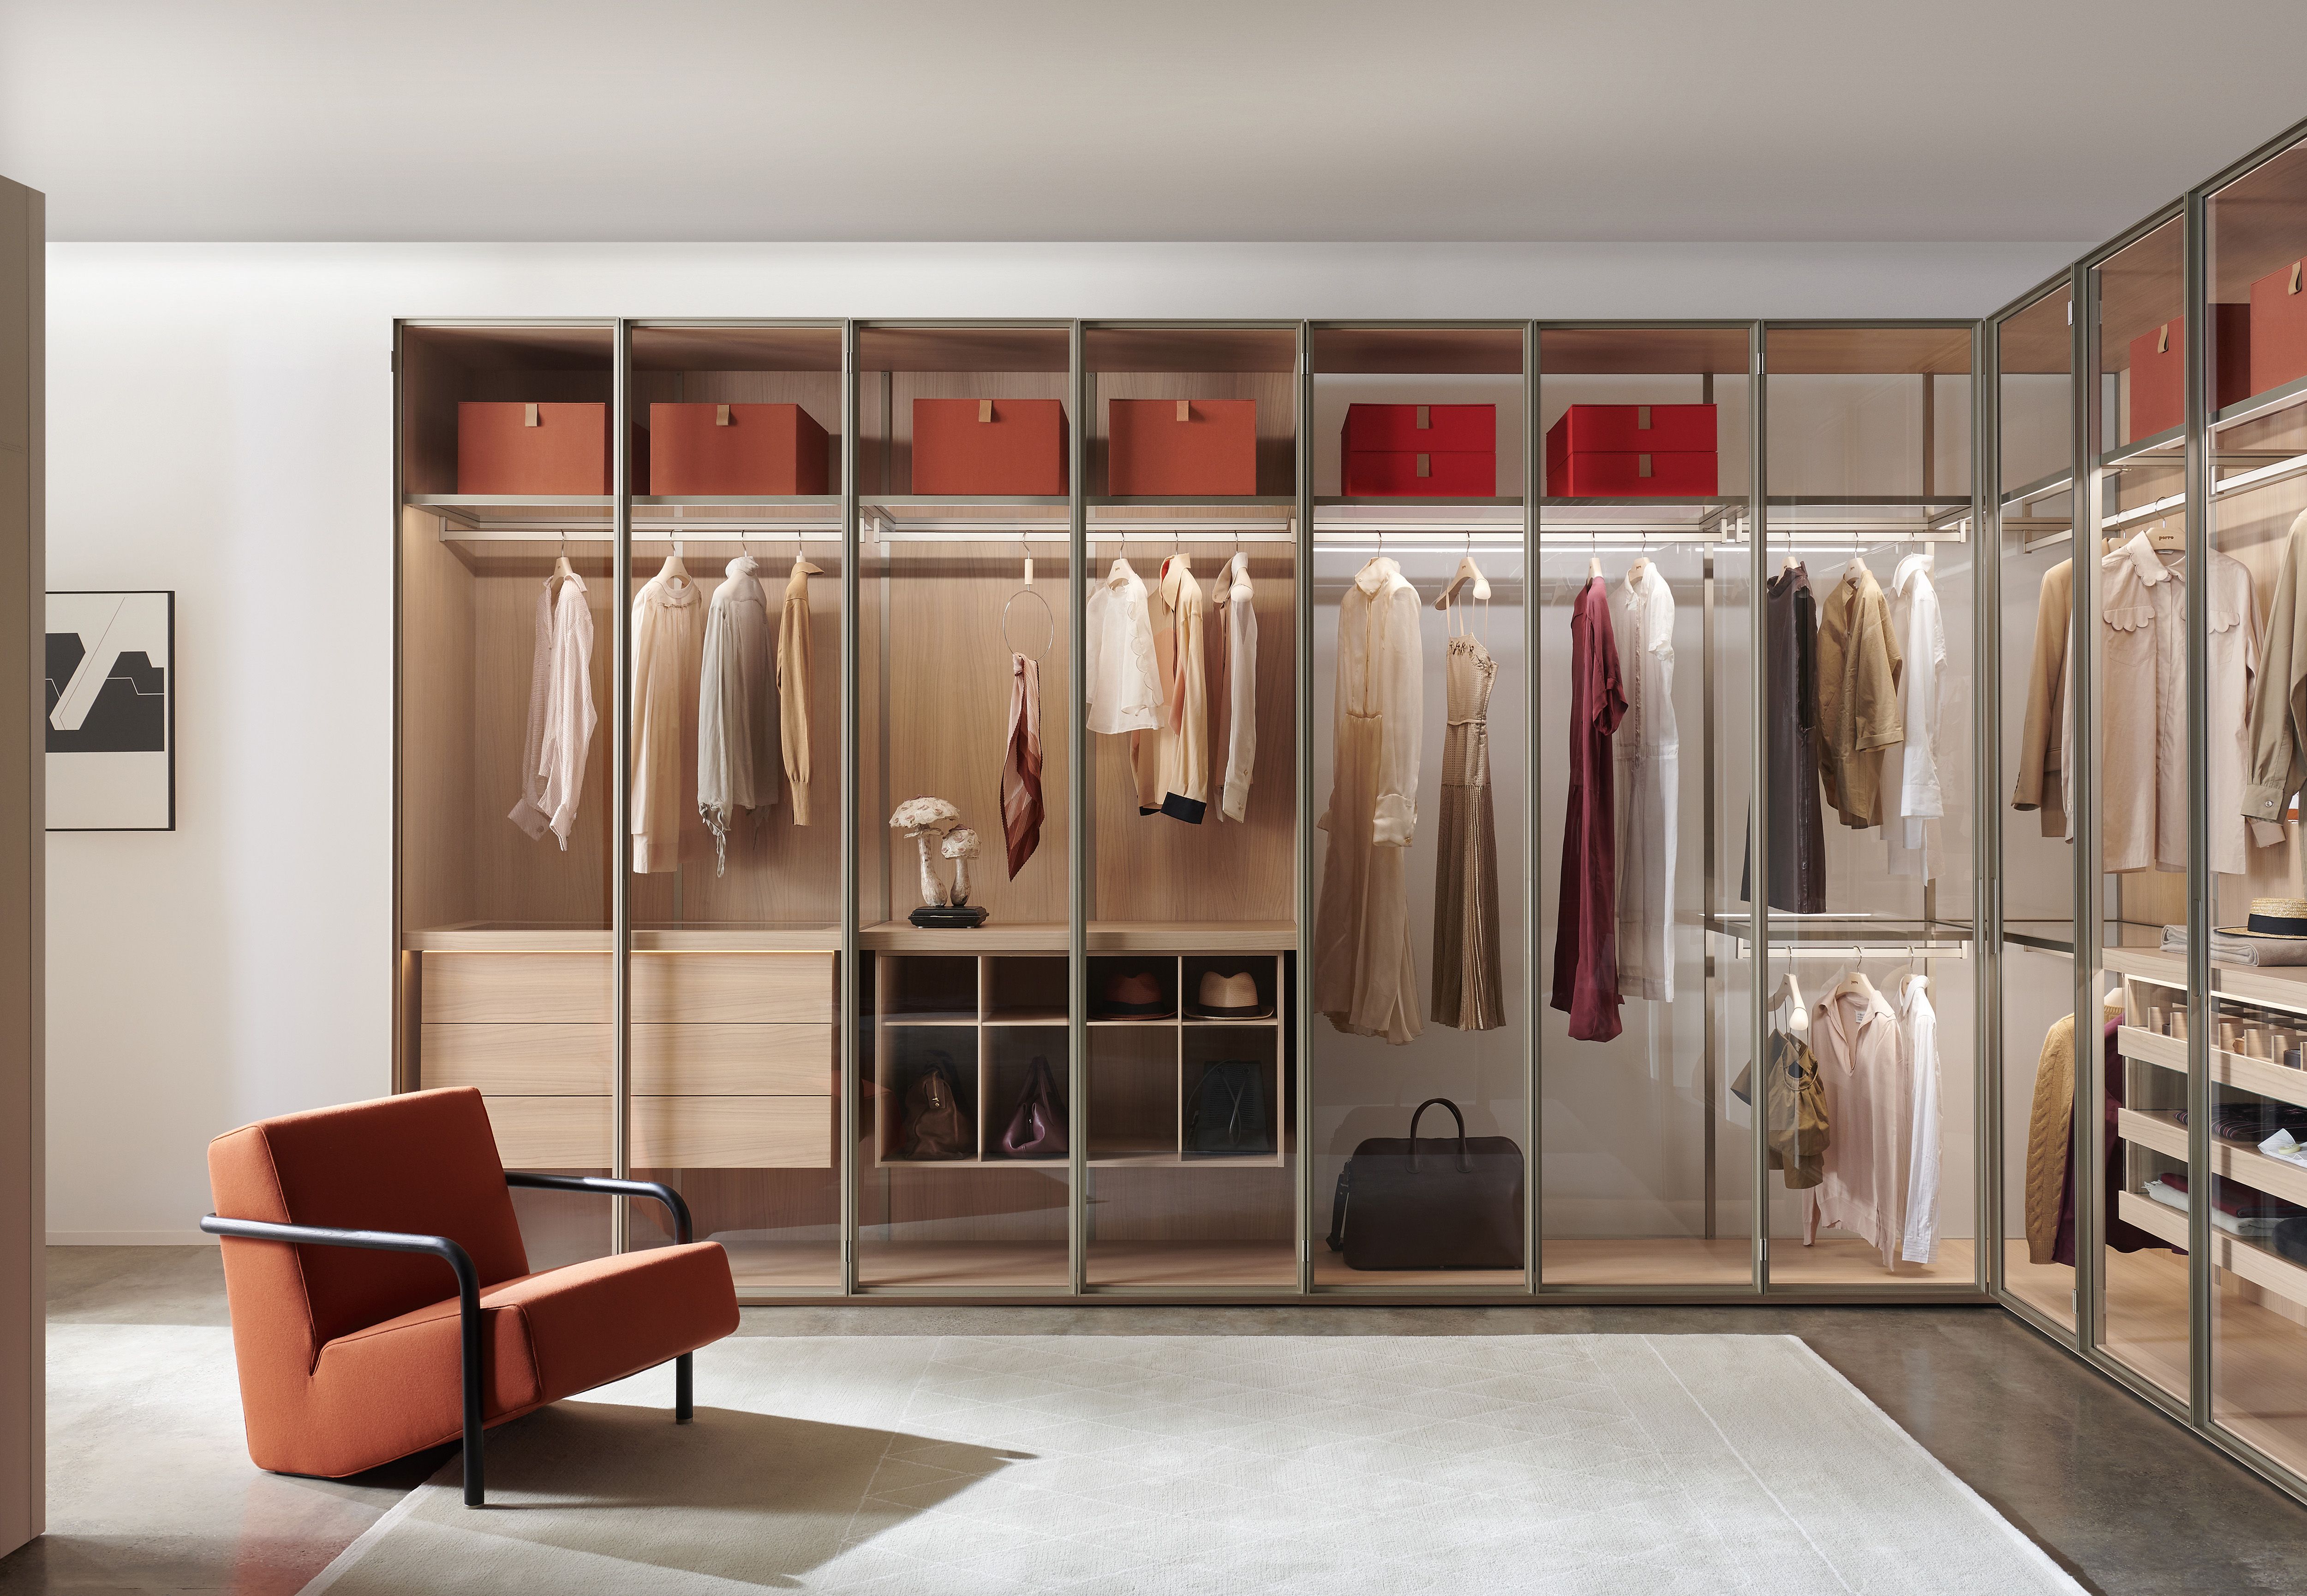 Luxury Closet Designs Top 10